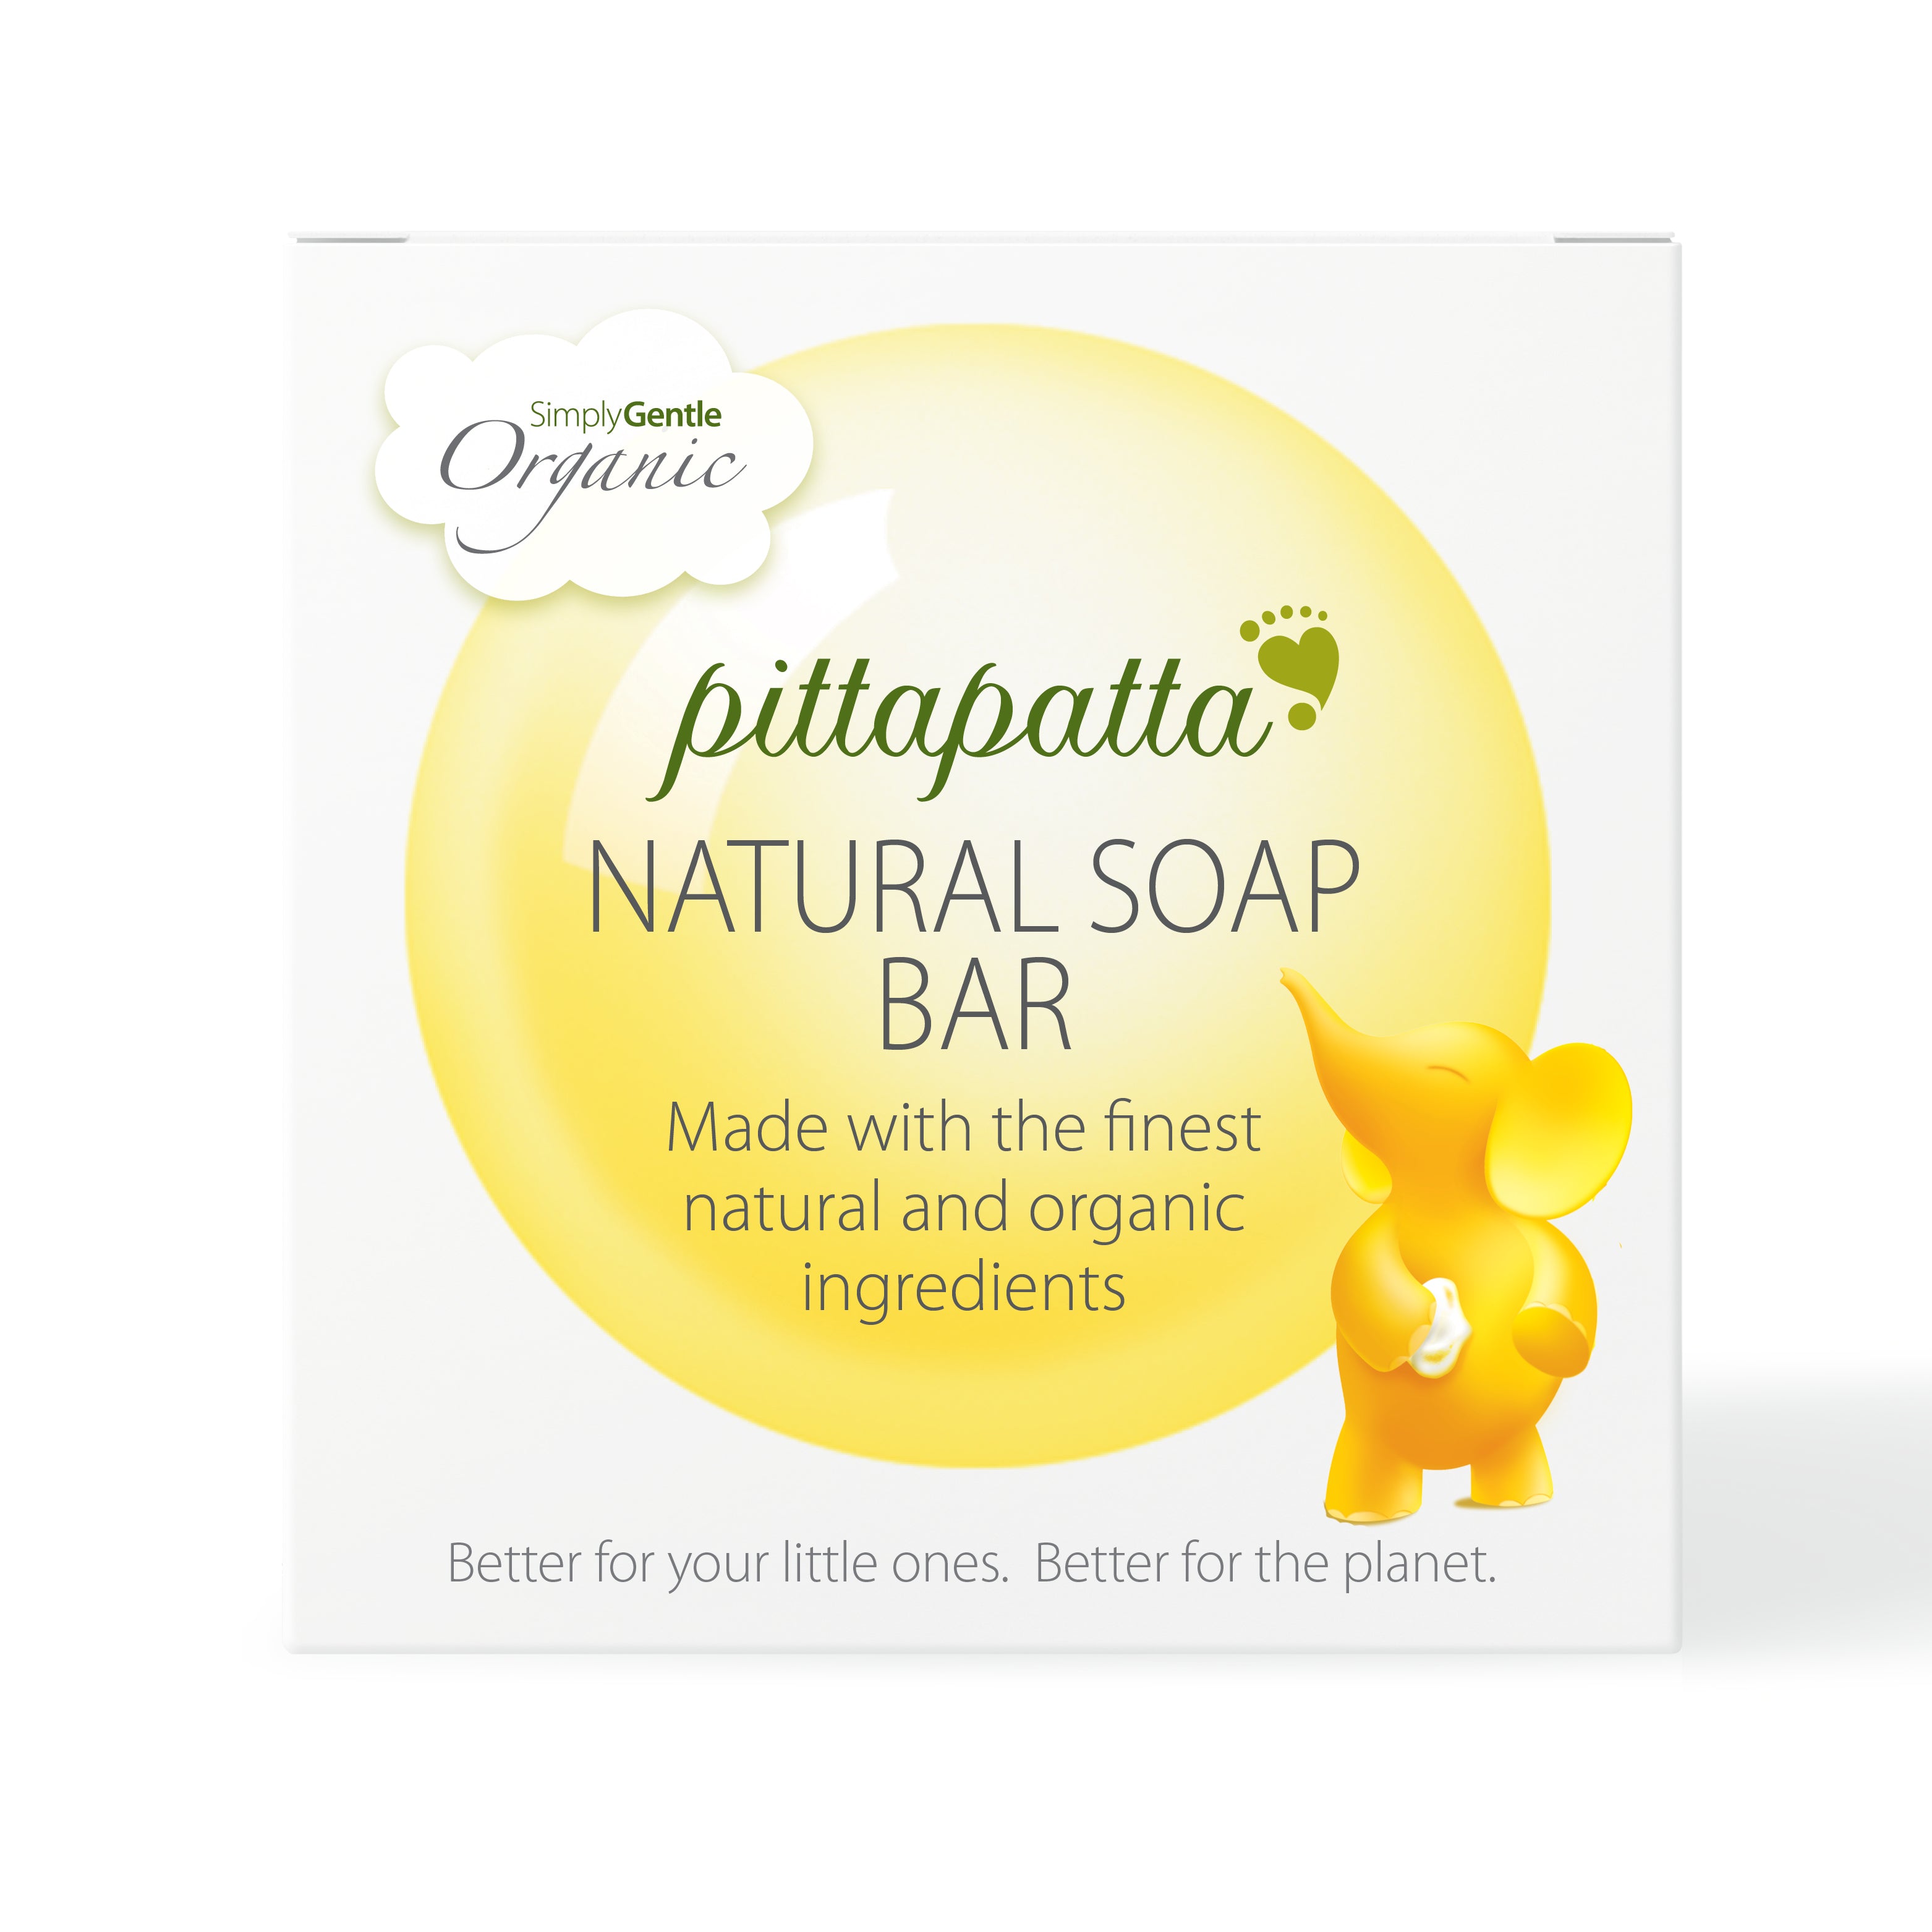 Pittapatta Natural Soap Bar